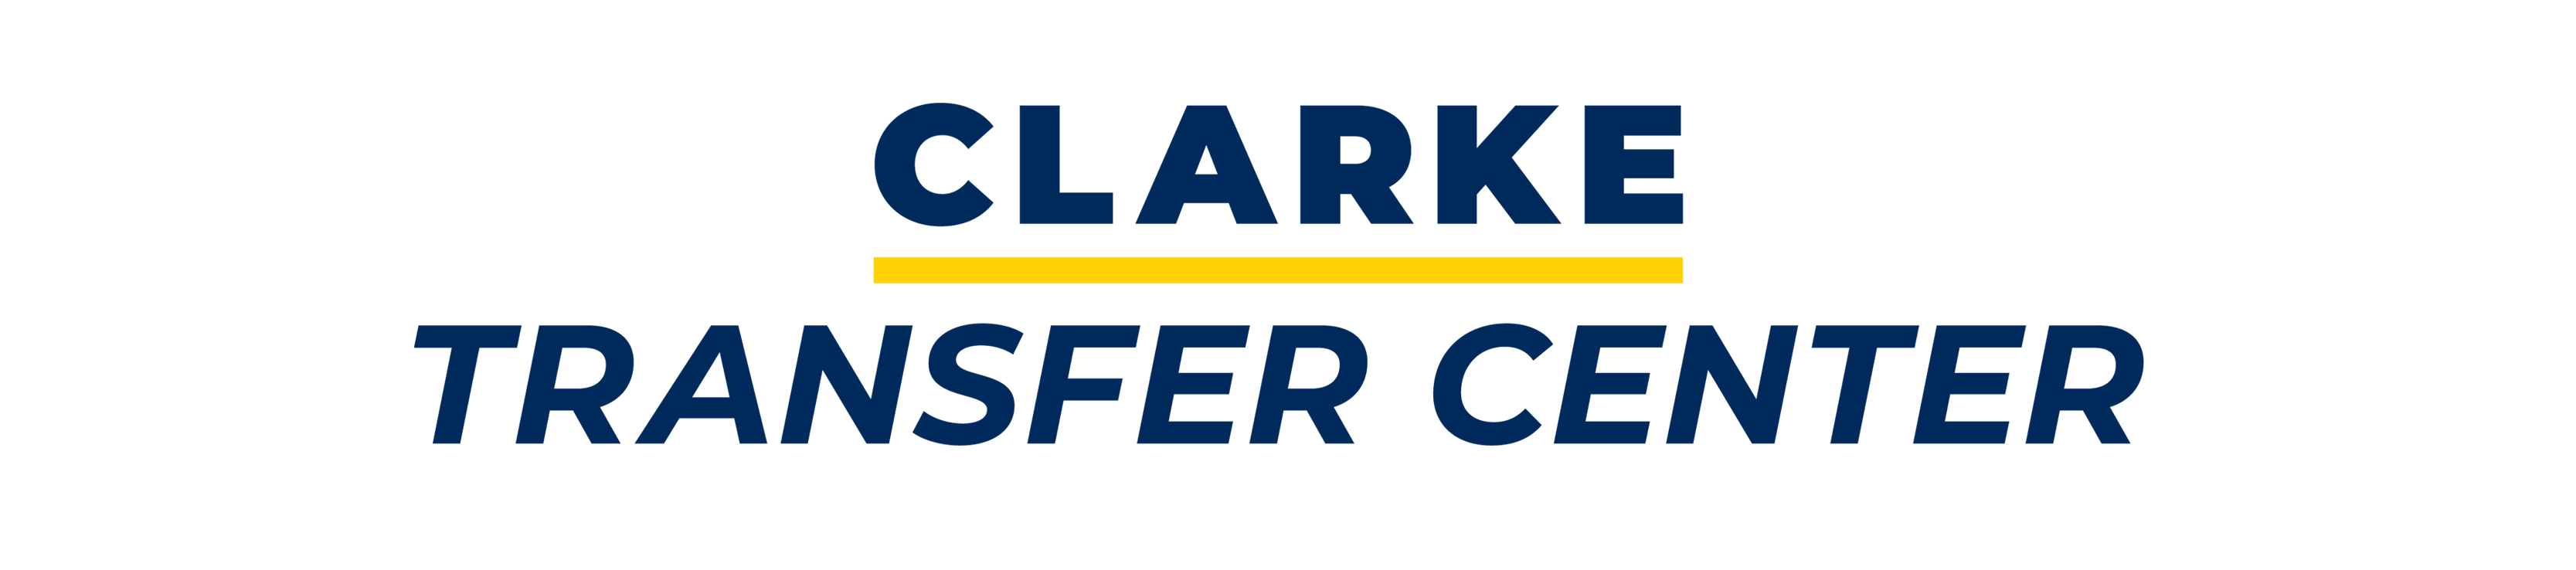 Clarke University Transfer Center logo